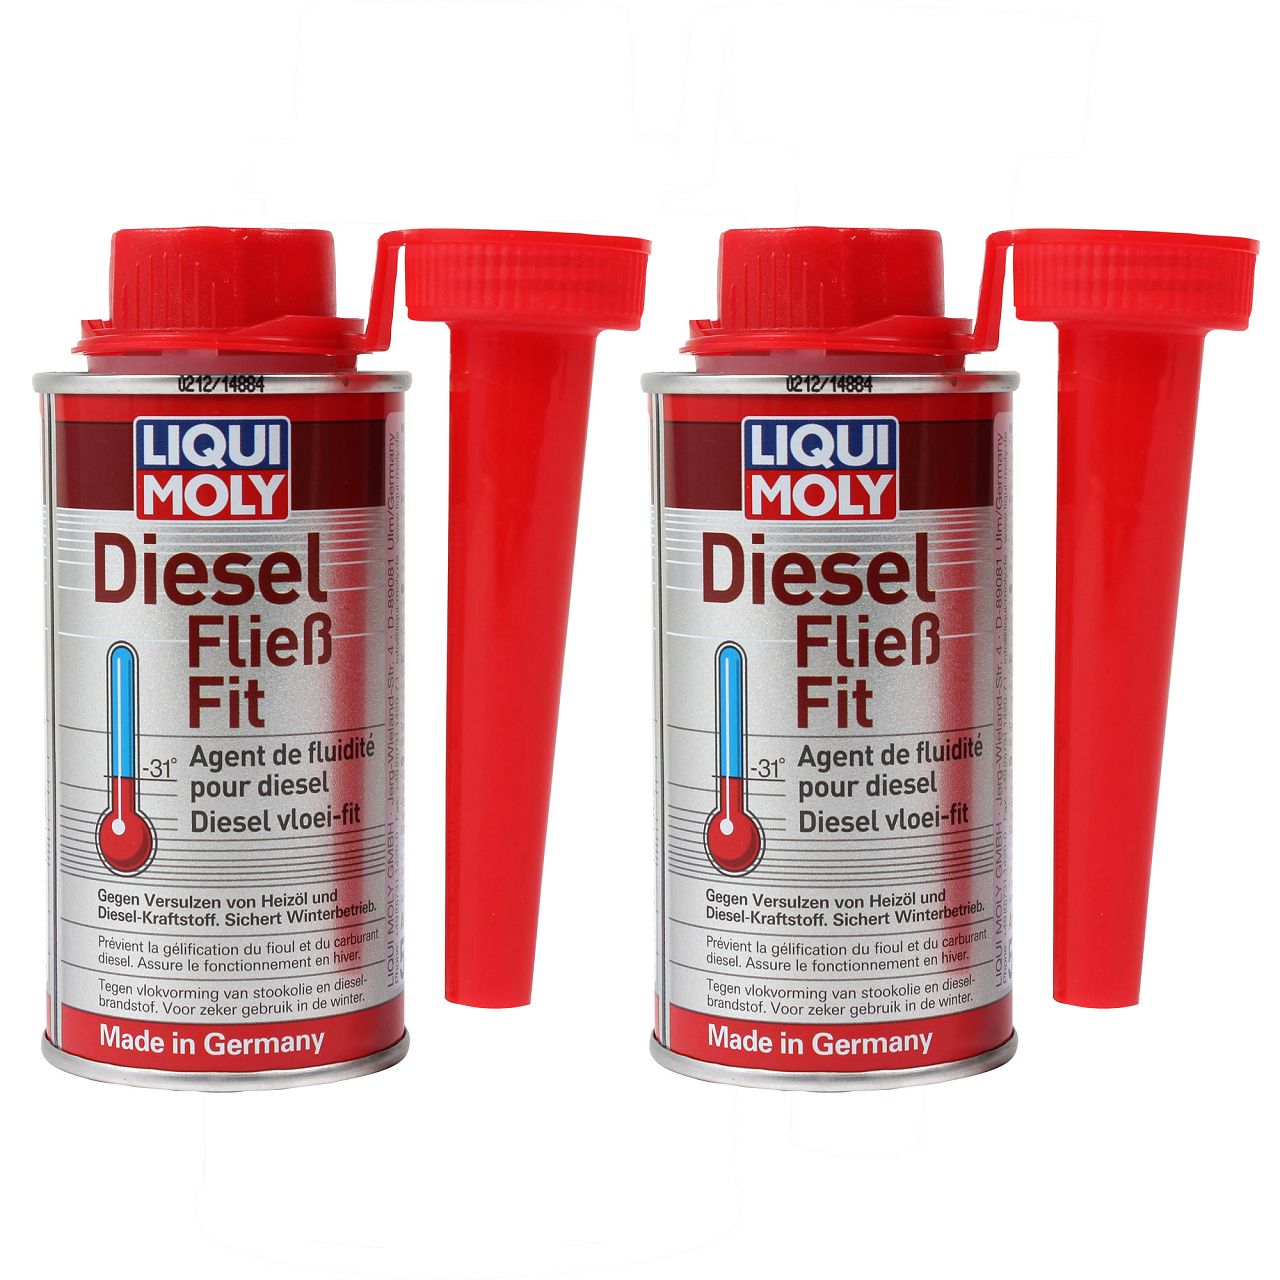 2x 150ml LIQUI MOLY Diesel Fließ-Fit Dieselzusatz Winter Additiv 5130